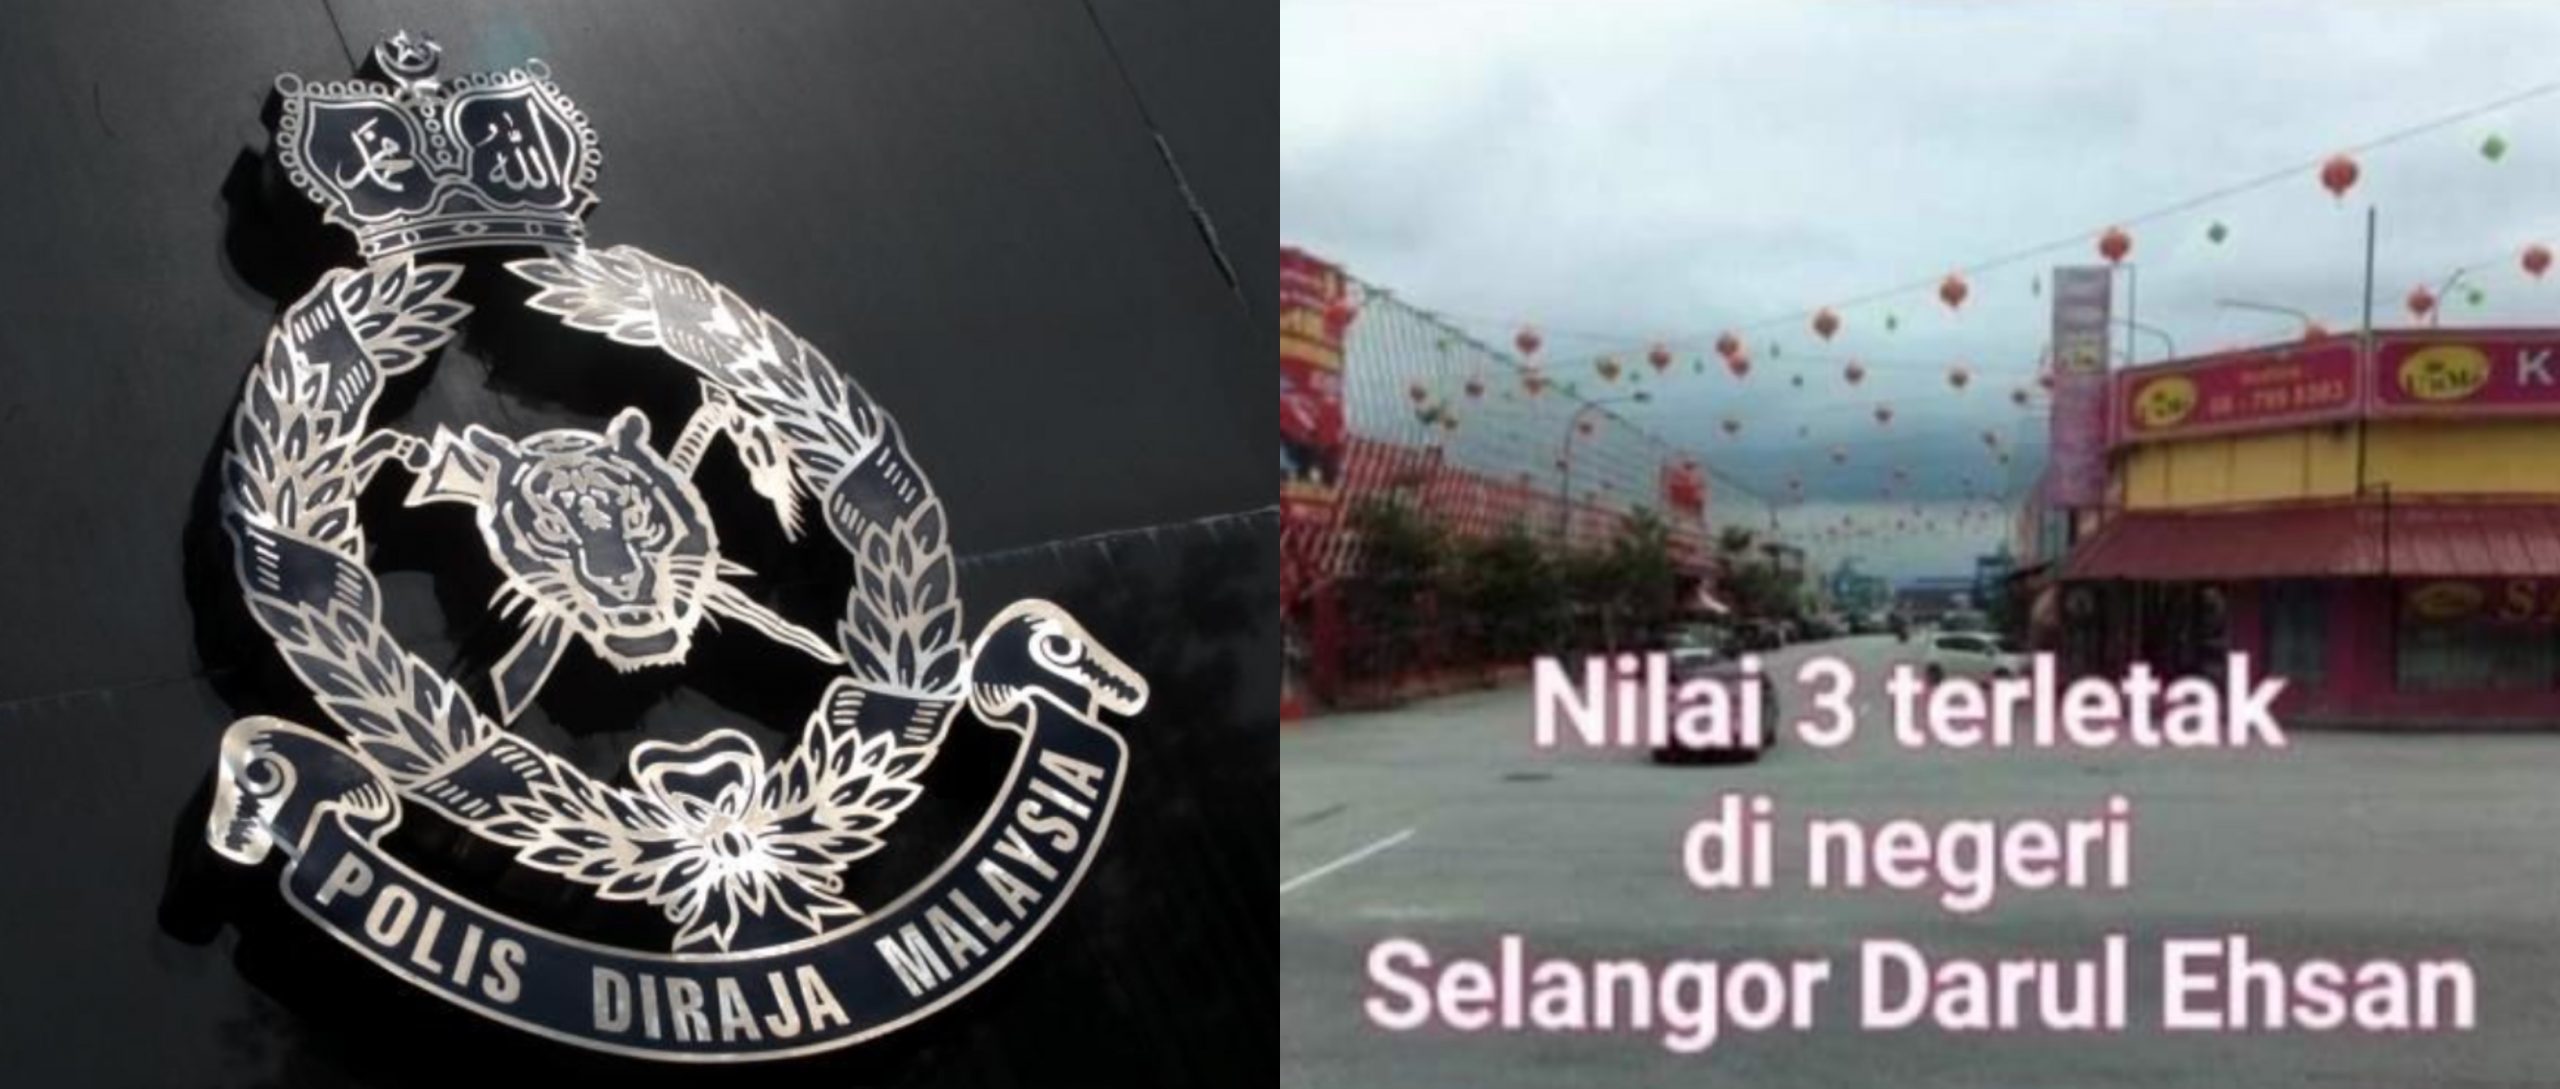 Polis Siasat Kenyataan Nilai 3 Terletak Di Negeri Selangor